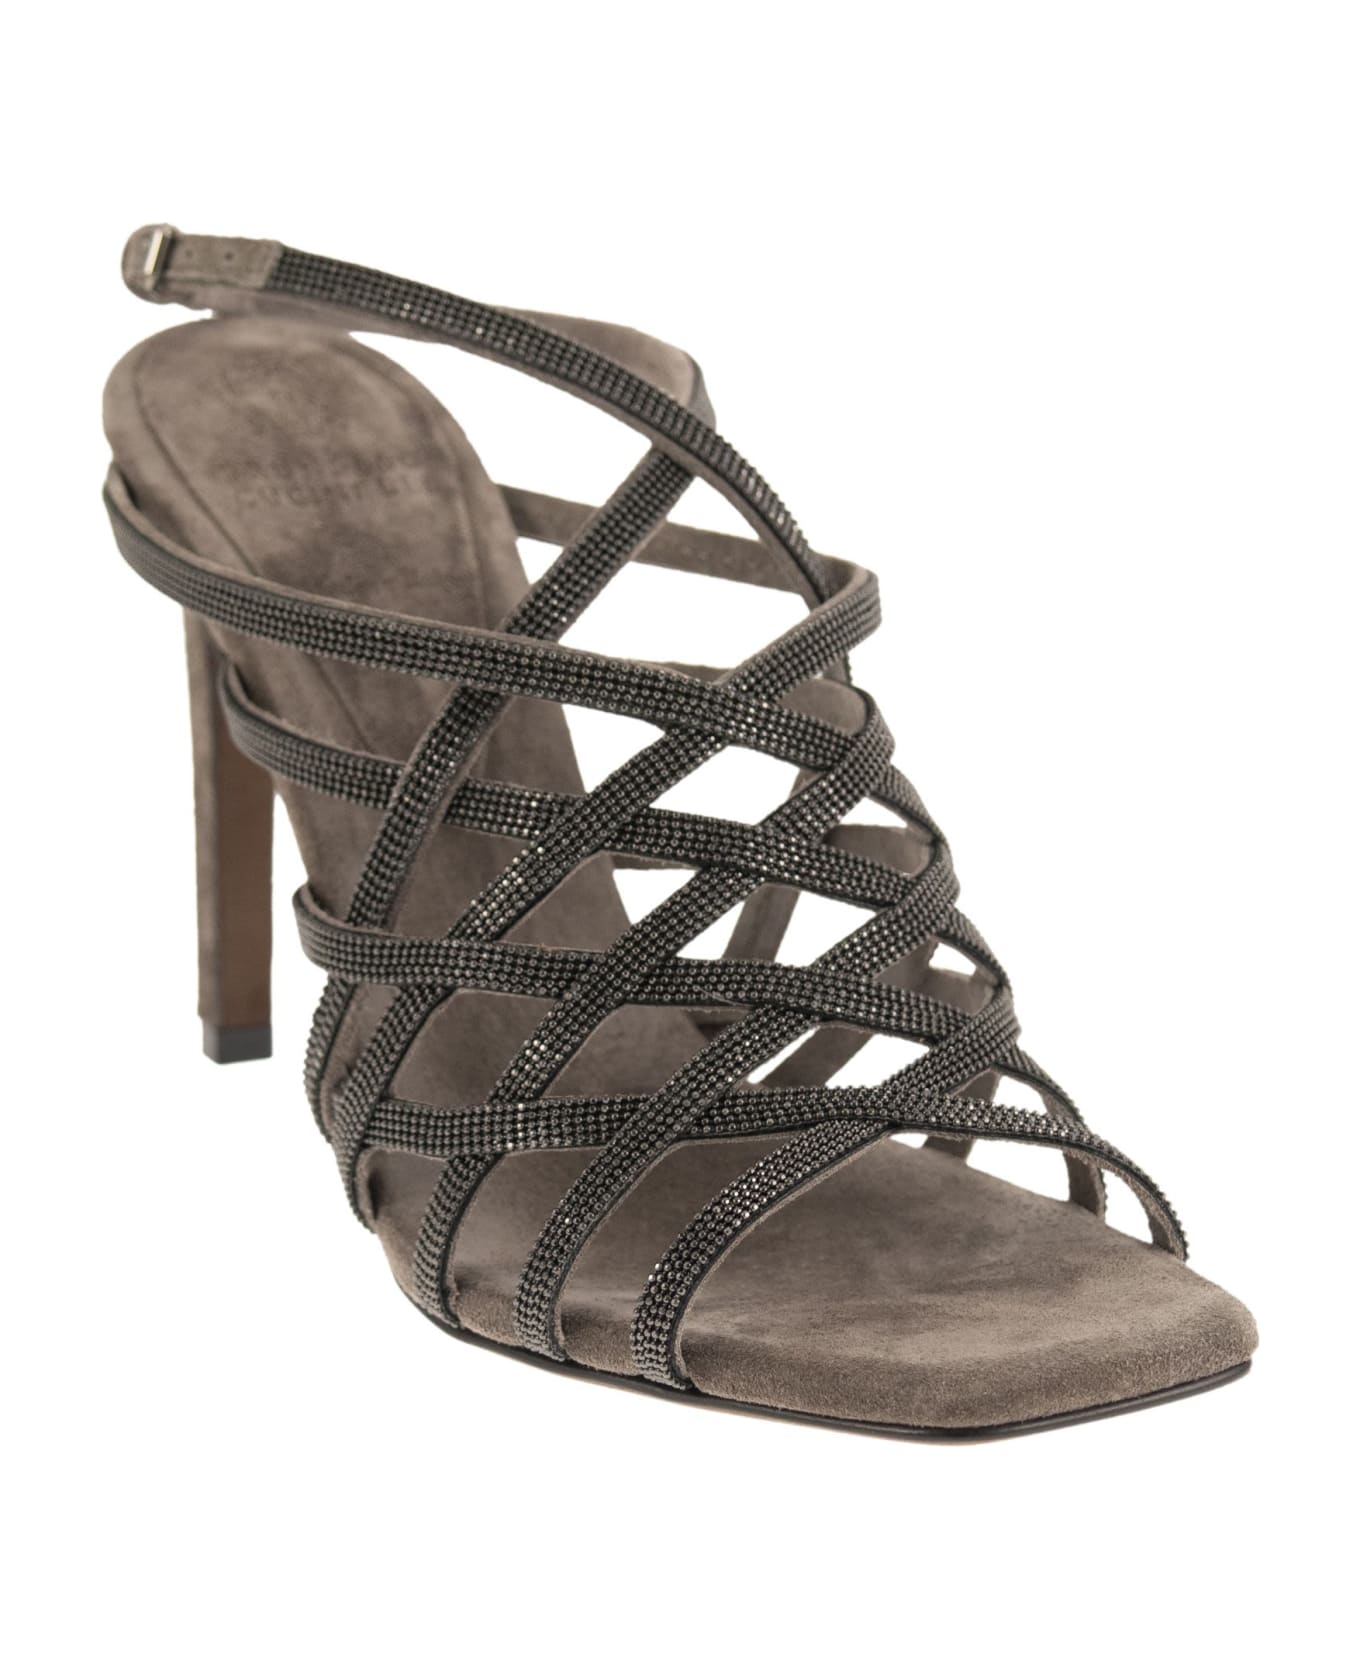 Brunello Cucinelli Sandals - Grey